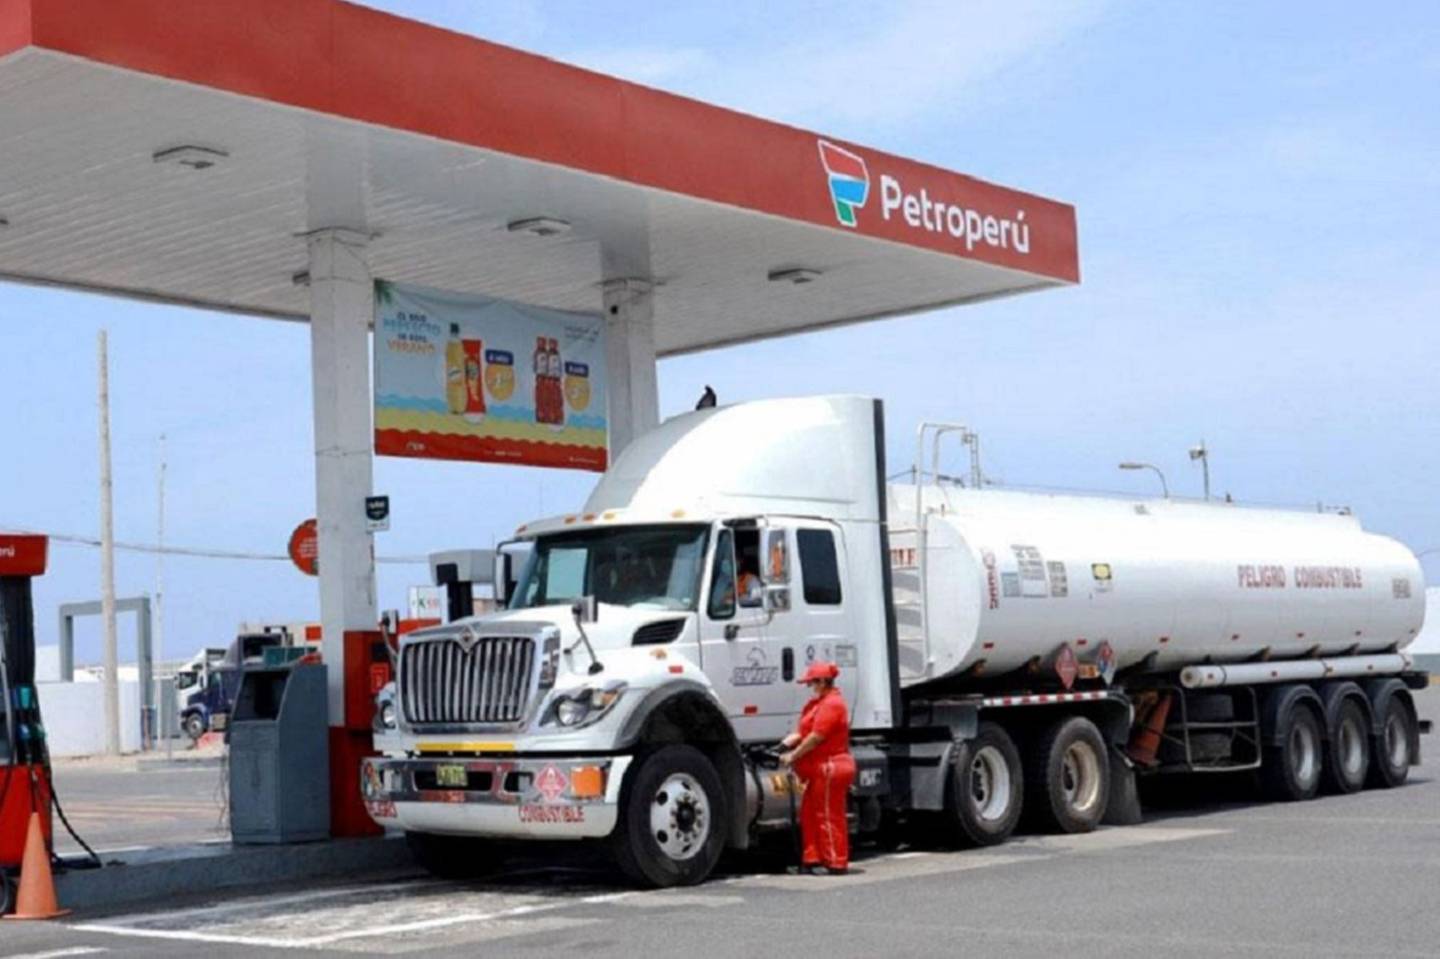 Los despachos de gasolinas y diésel se irán incrementando de manera gradual en Perú a partir de noviembre de 2022, aseguró Petroperú.dfd